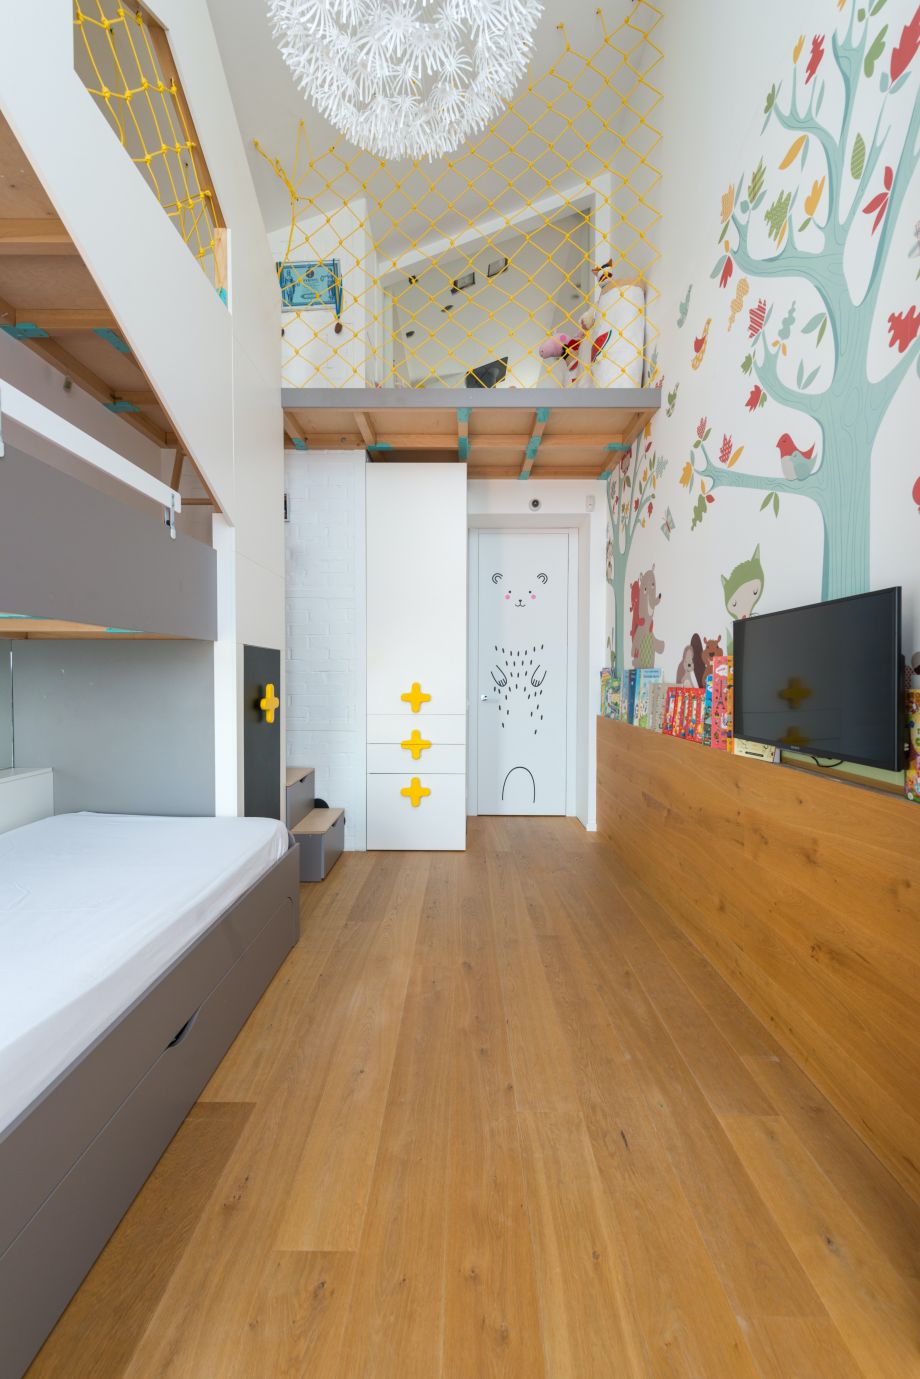 Une chambre pour 2 enfants, idées d'aménagement pour la rentrée